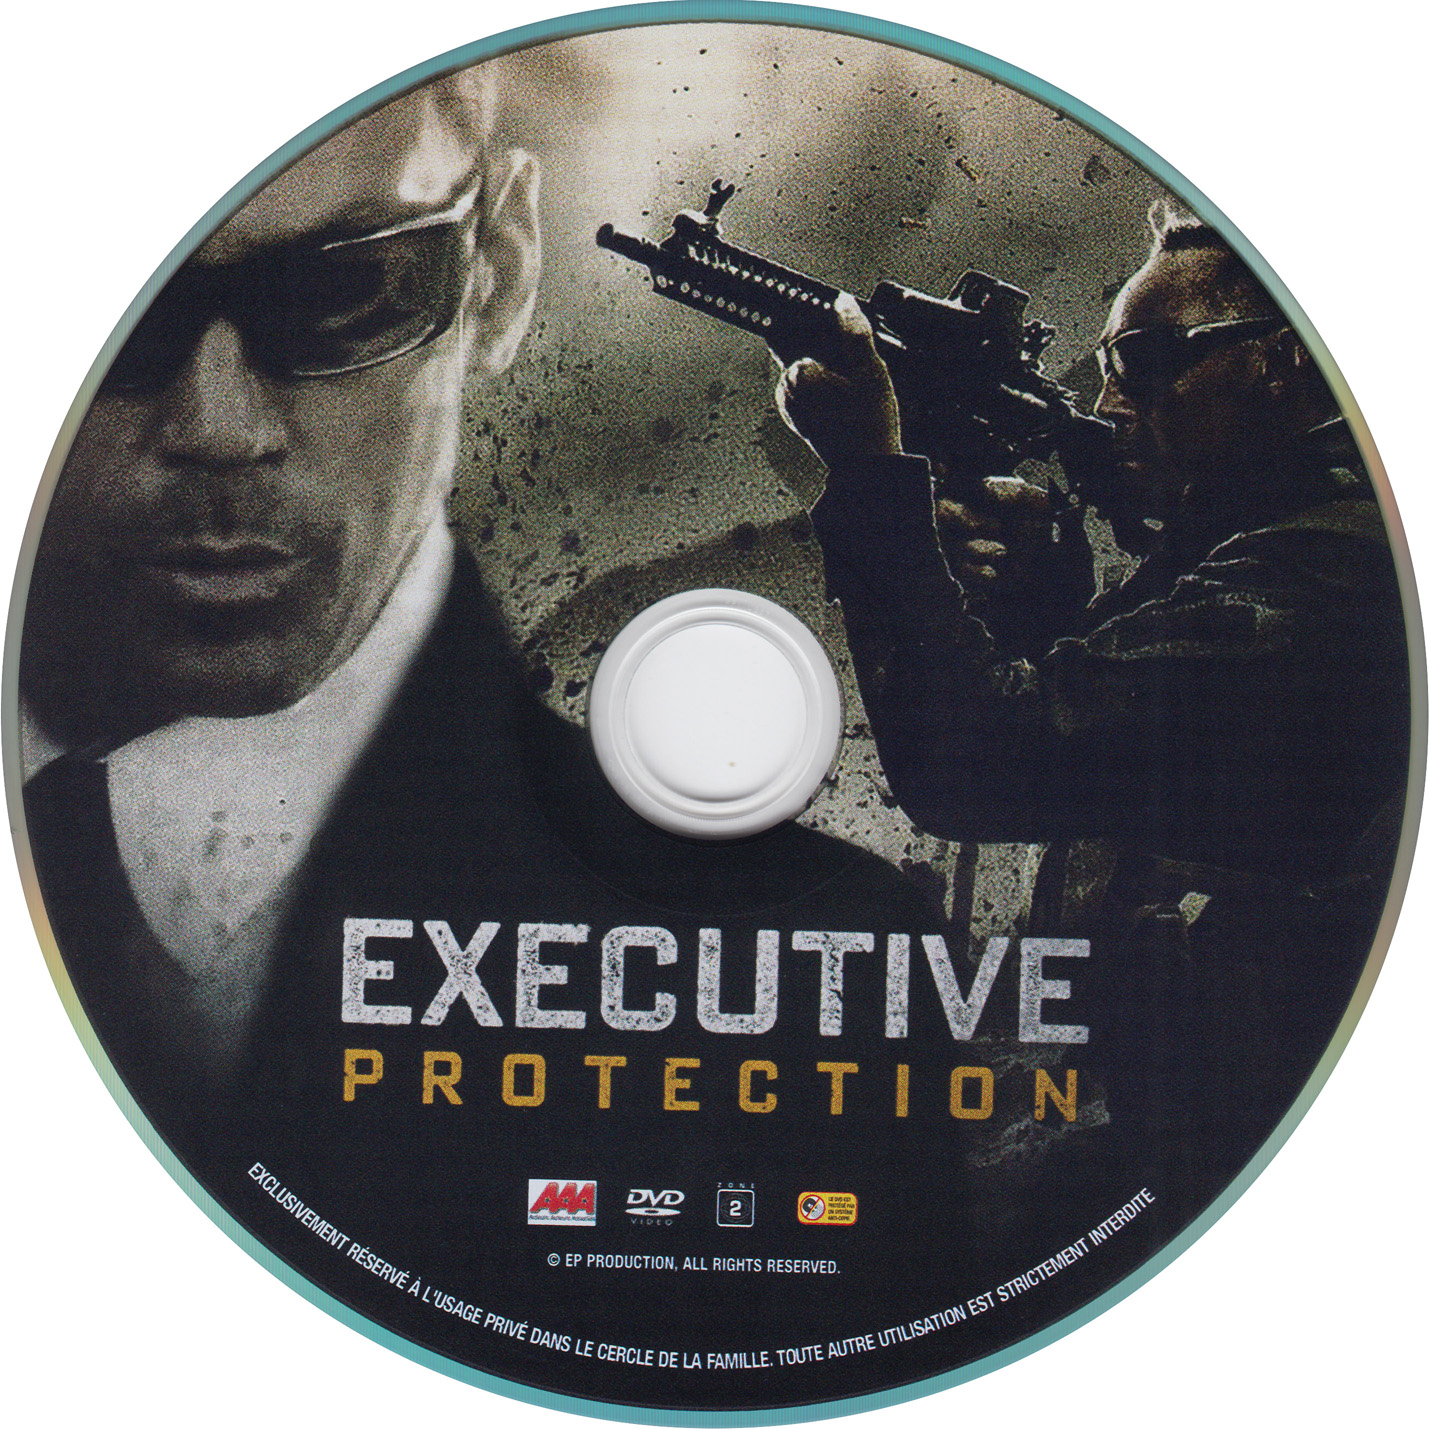 Executive protection